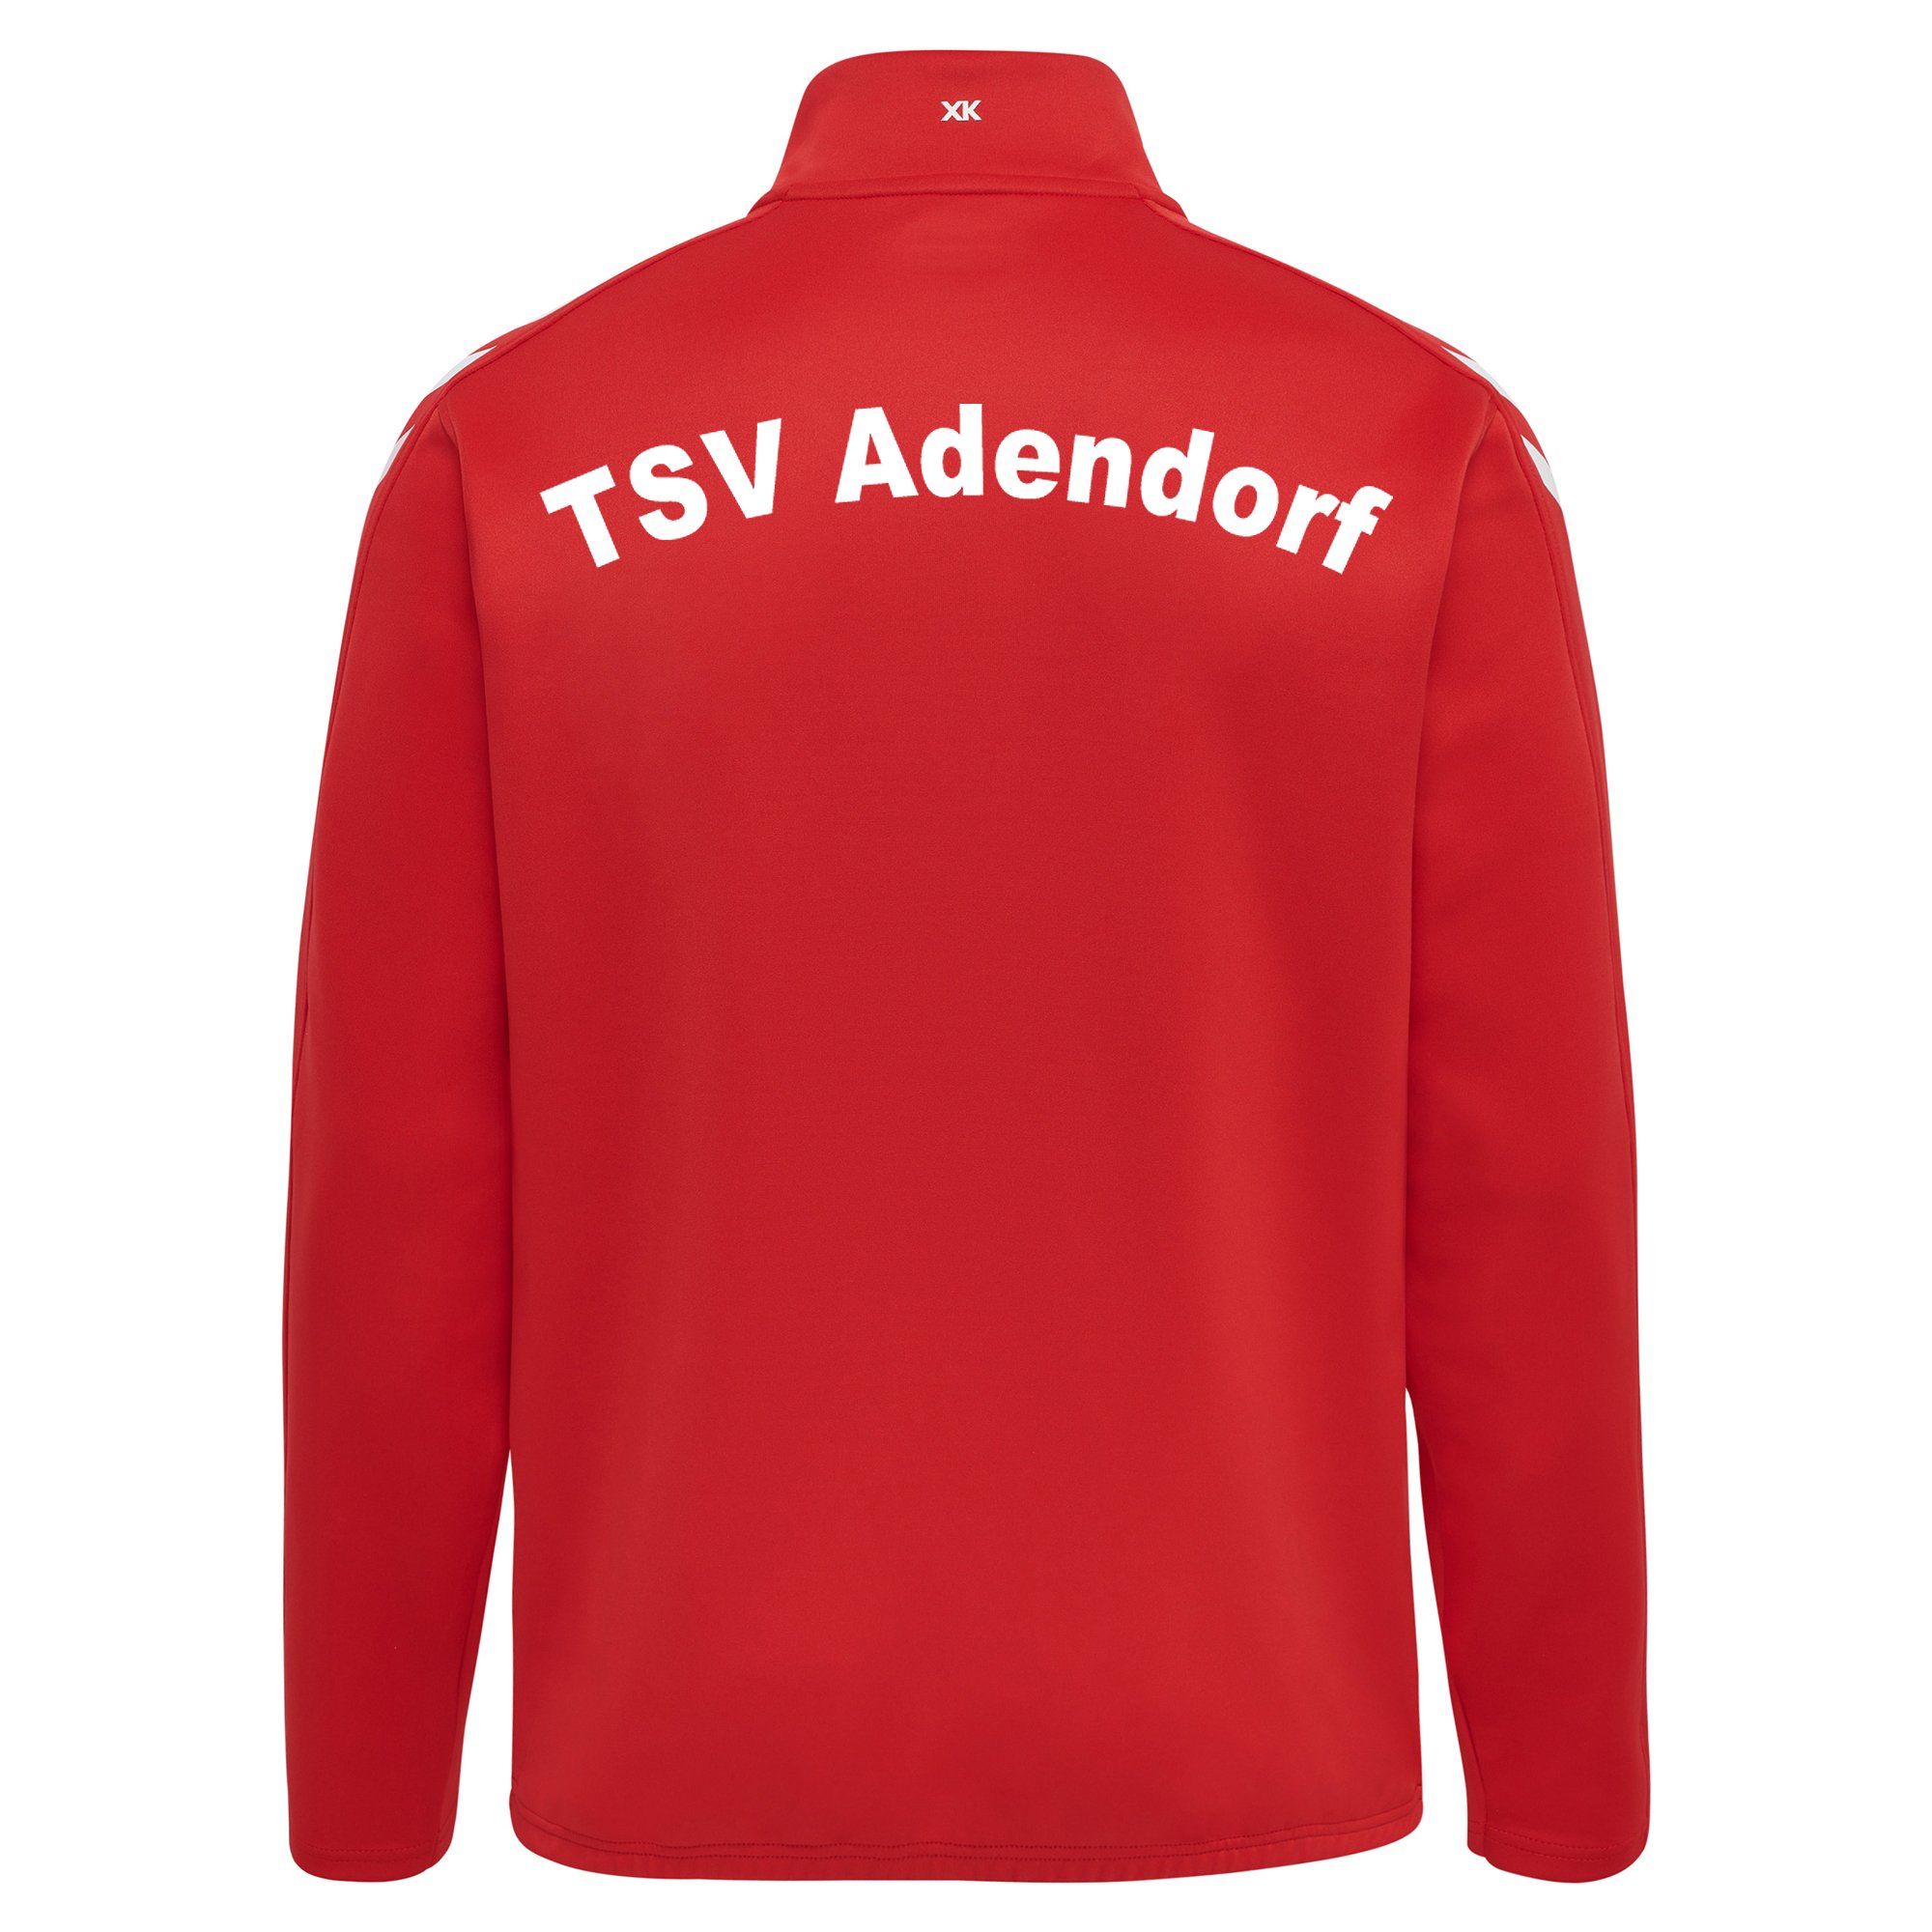 TSV Adendorf Zip Top